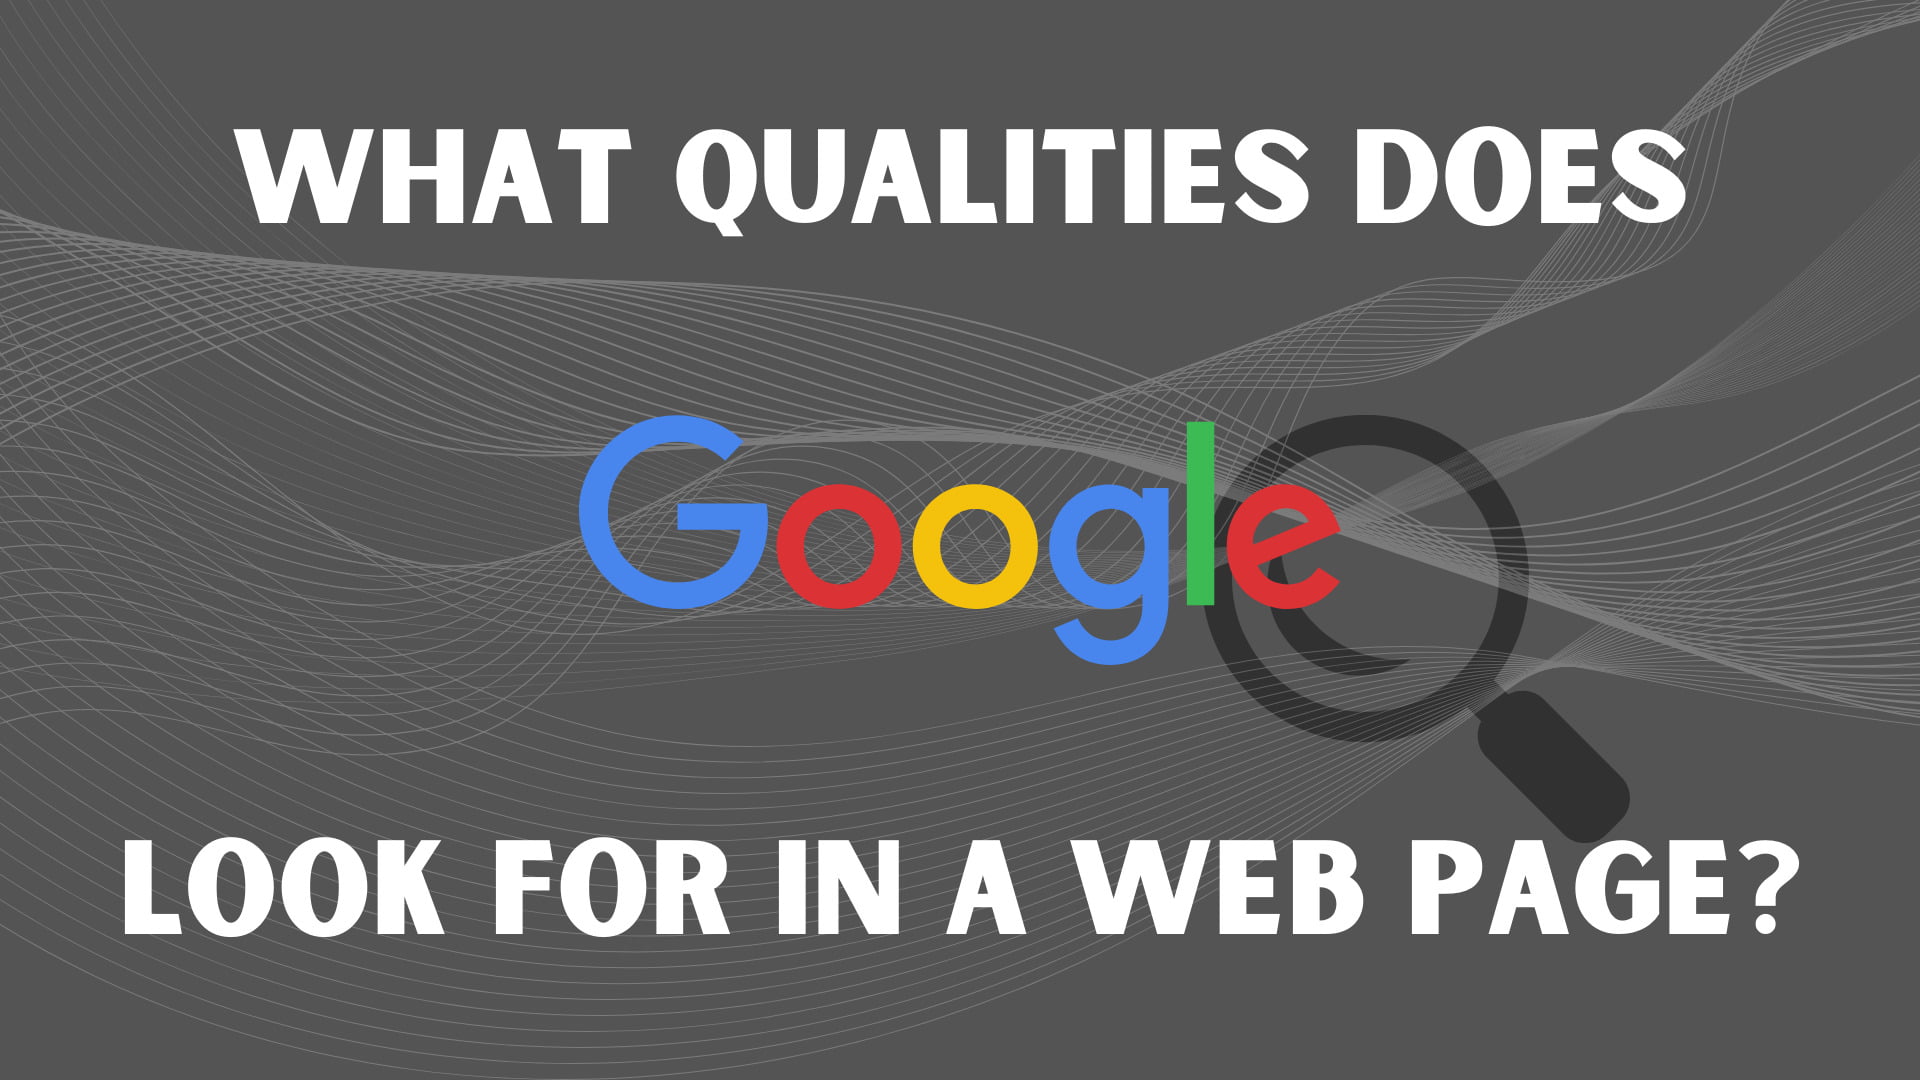 Nach welchen Eigenschaften sucht Google bei einer Webseite?